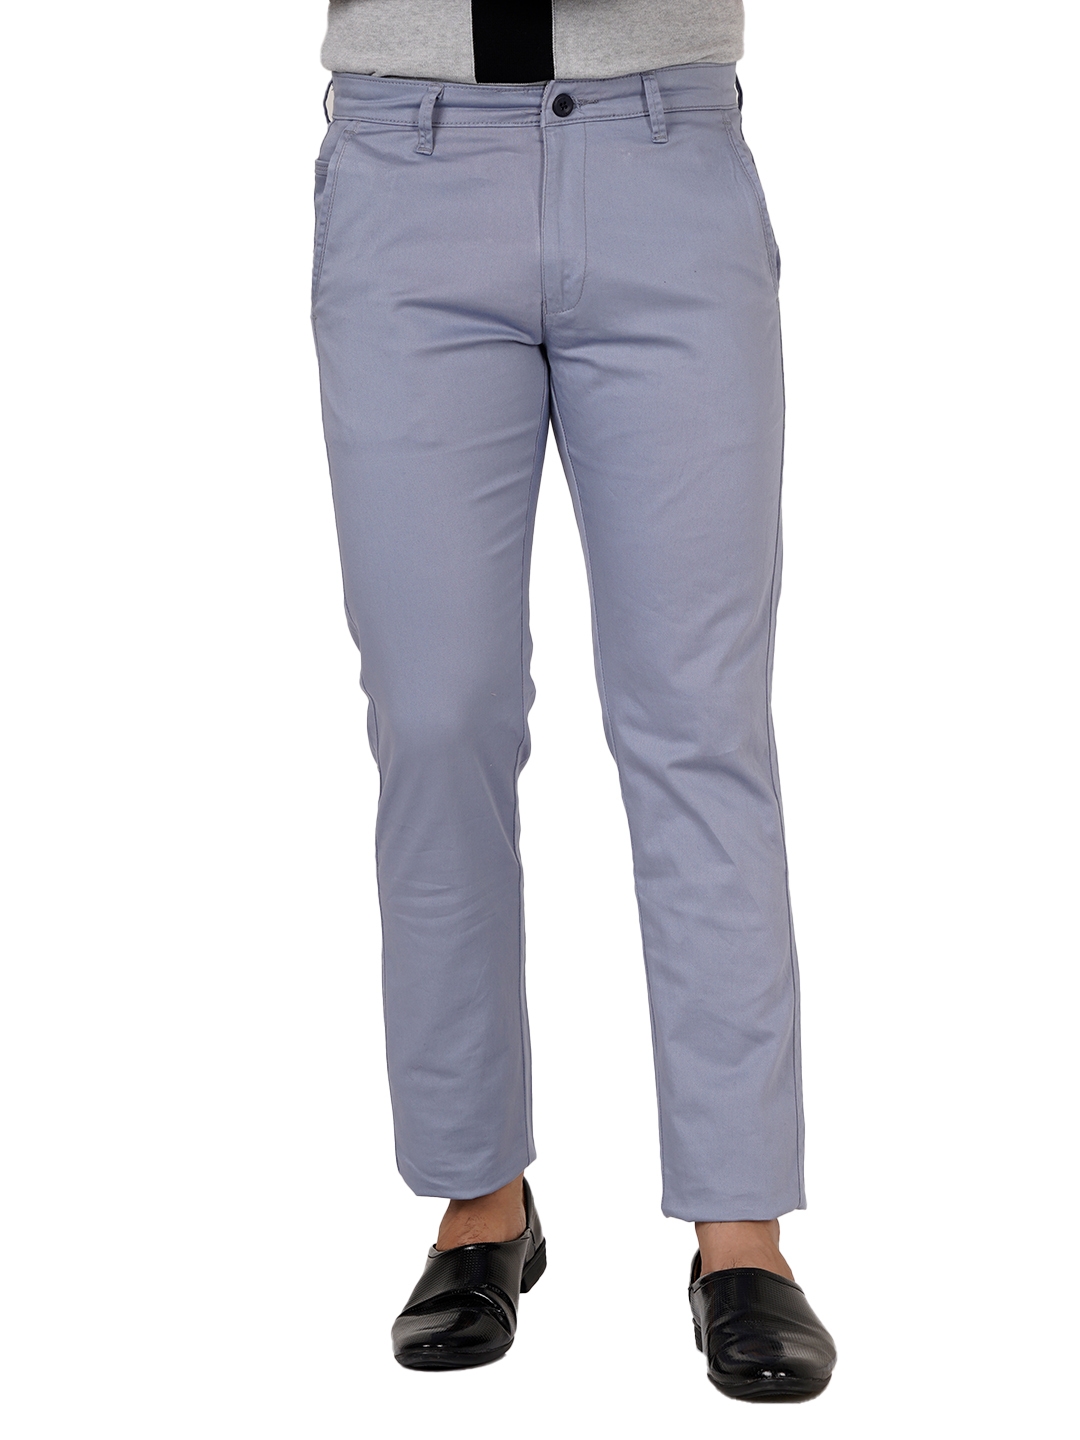 D'cot by Donear Men's Blue Cotton Trousers